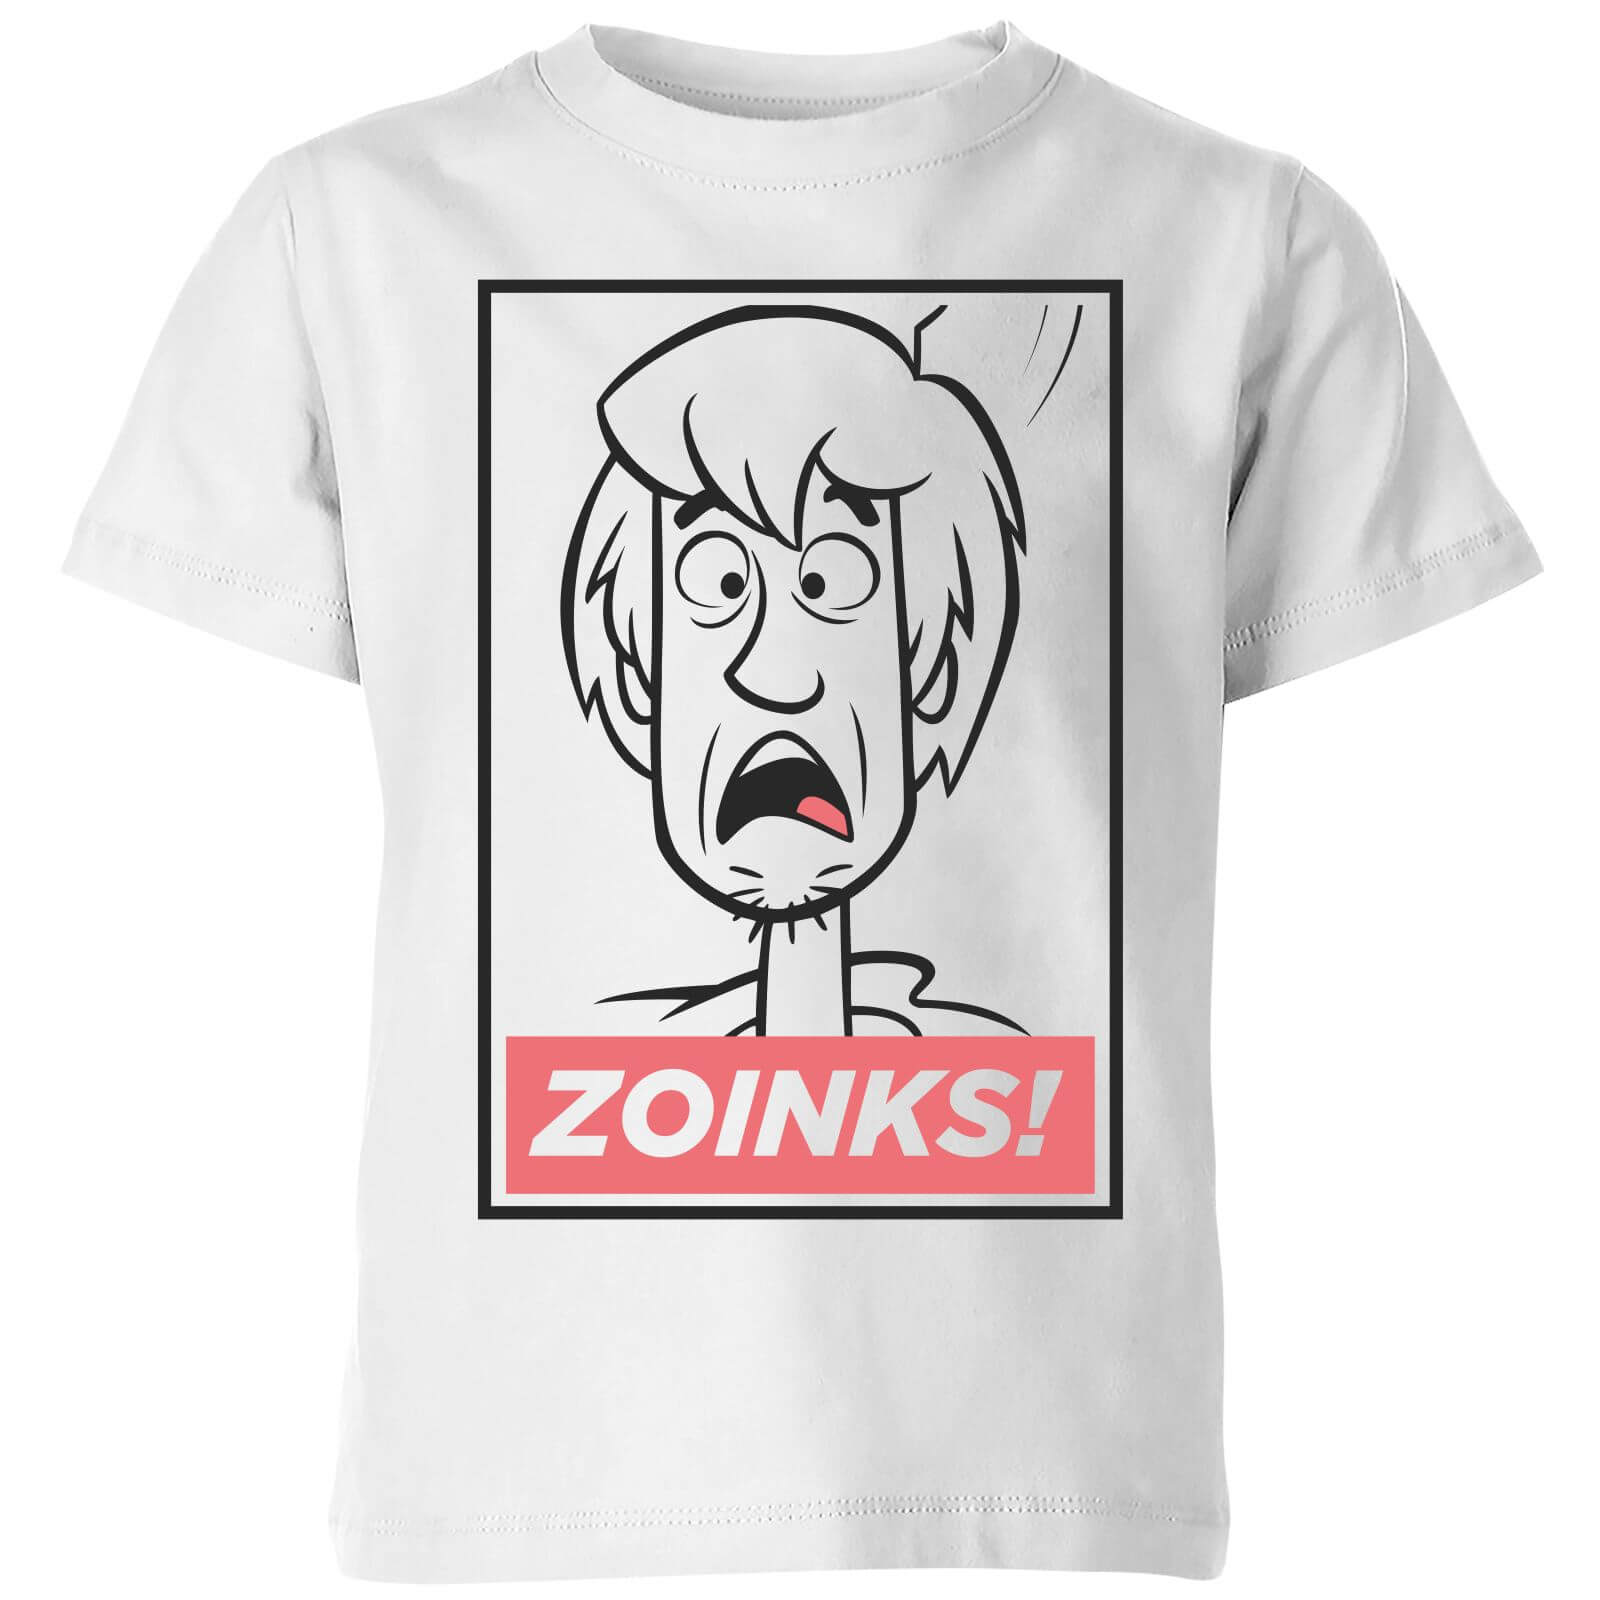 Scooby Doo Zoinks! Kids' T-Shirt - White - 3-4 Years